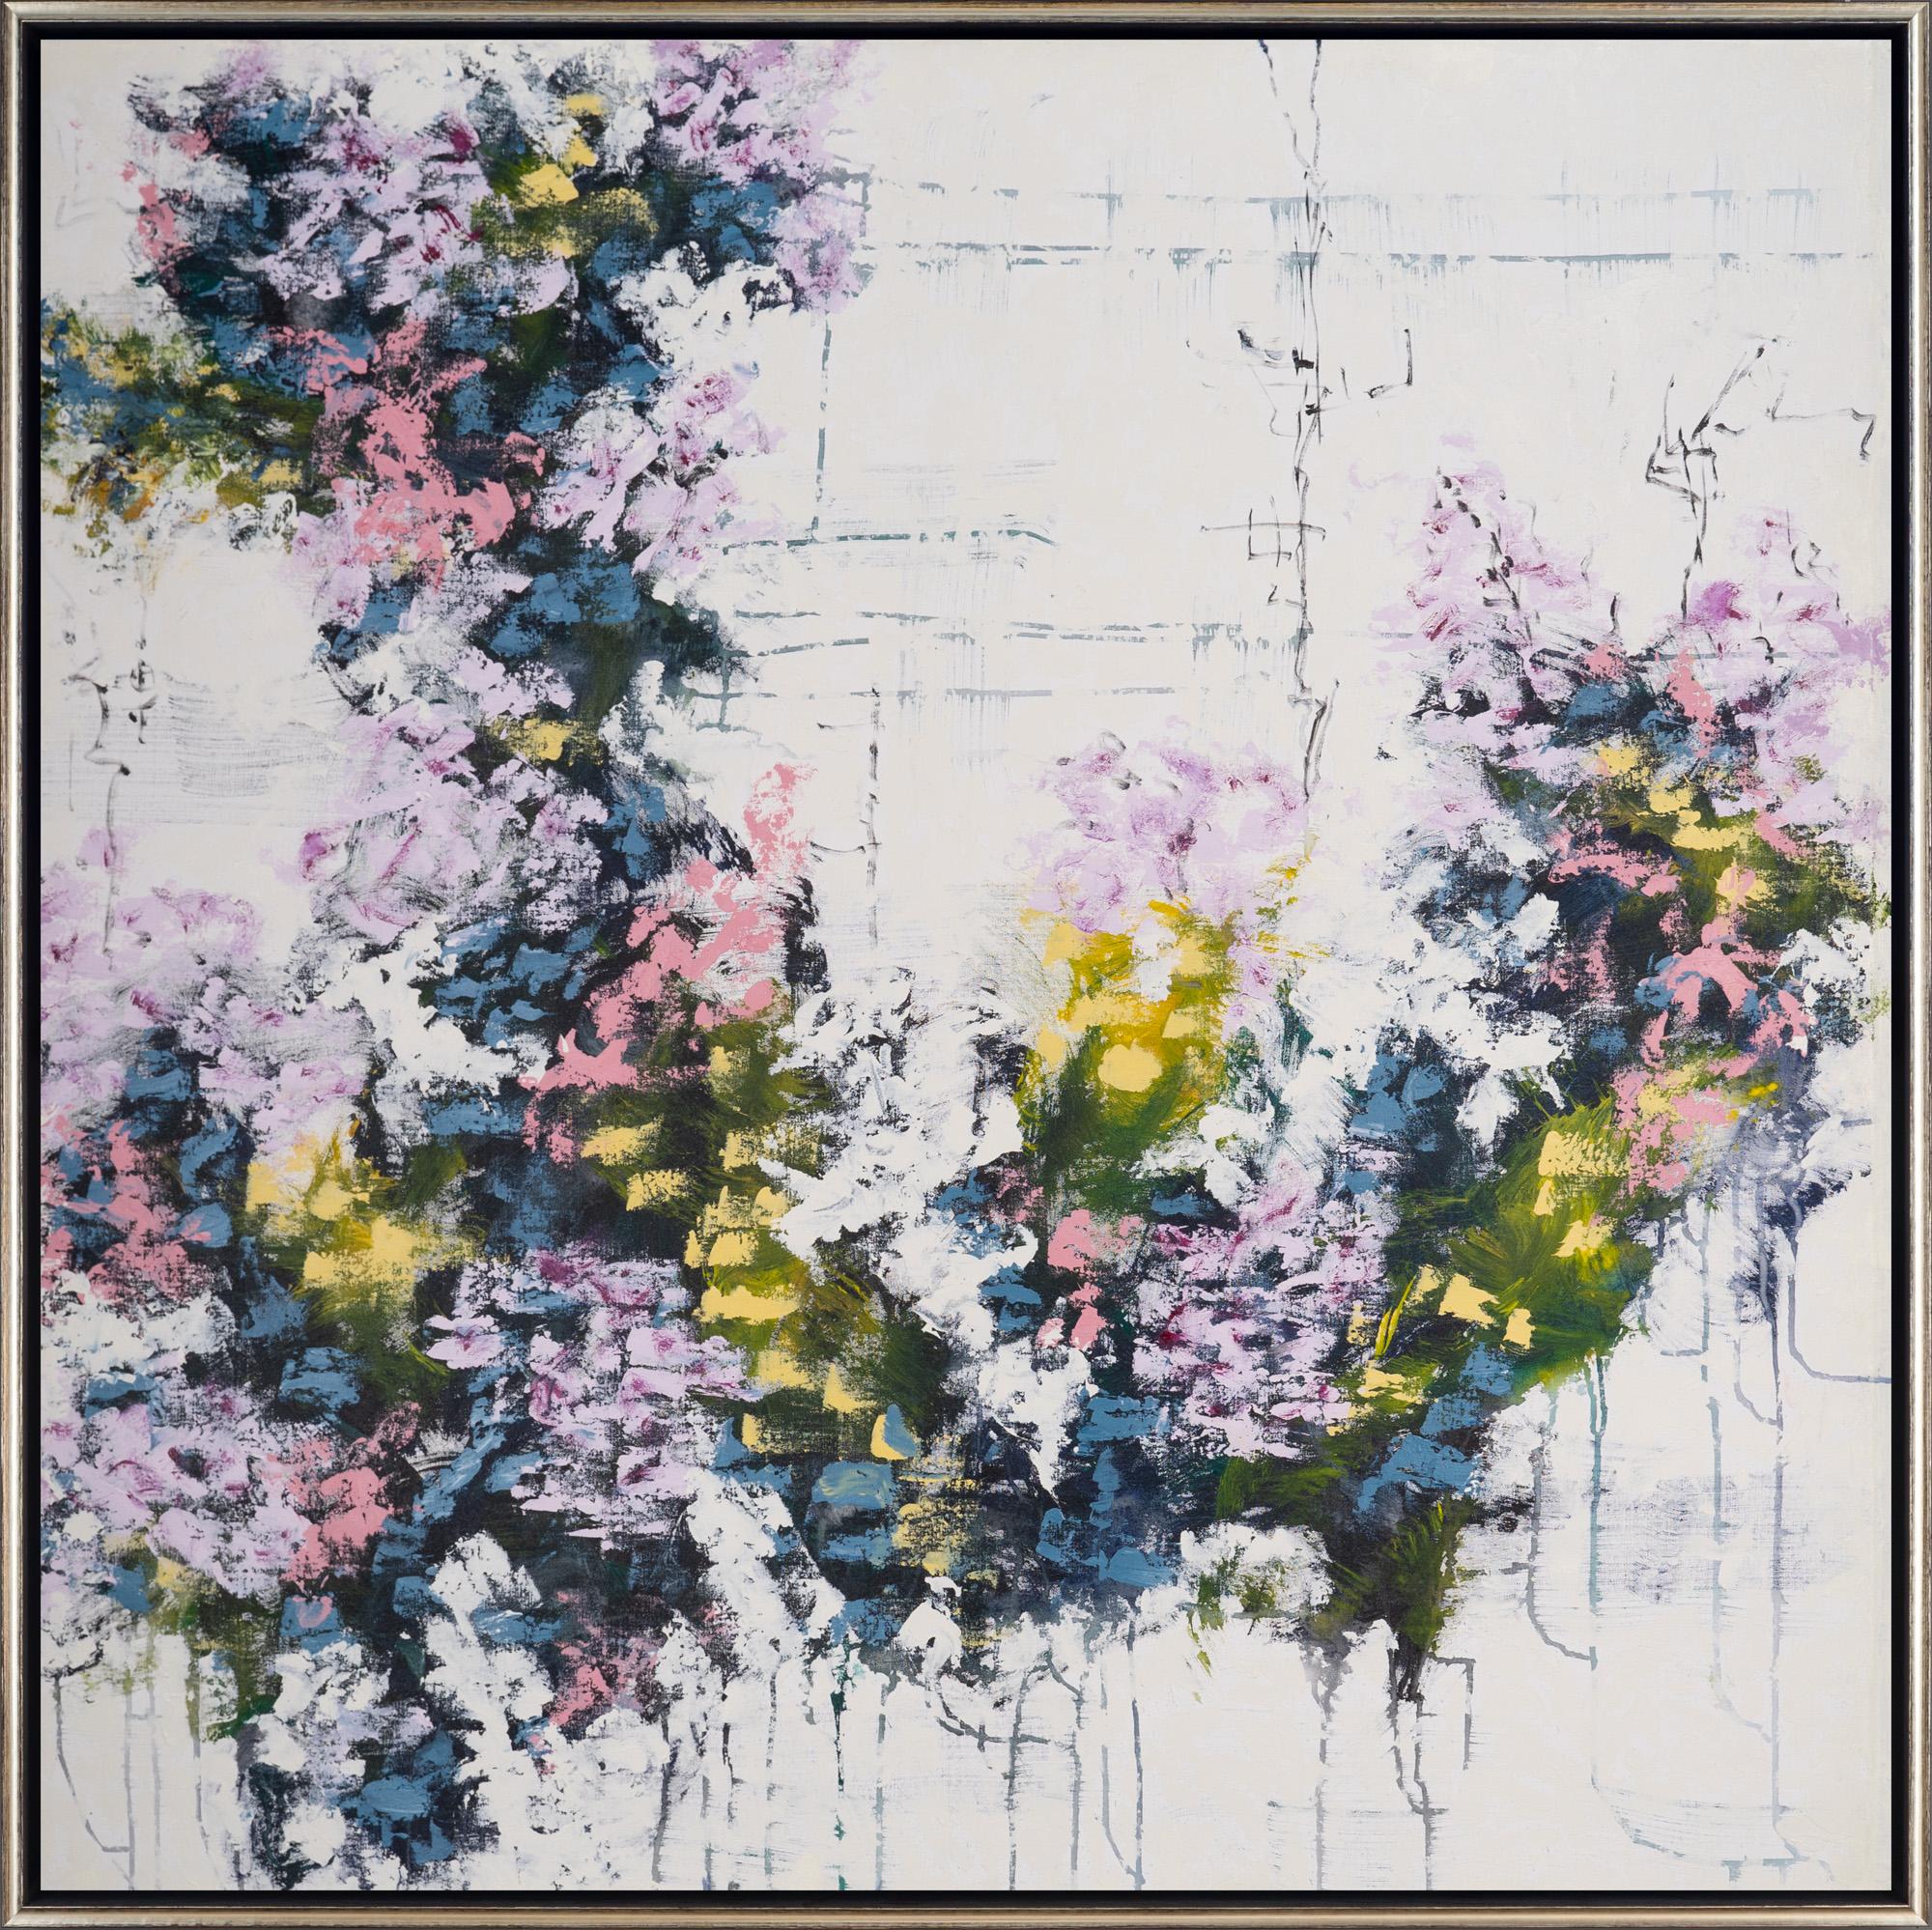 "Botanica 15-6" Abstrakte florale Mixed Media auf Leinwand gerahmte Malerei